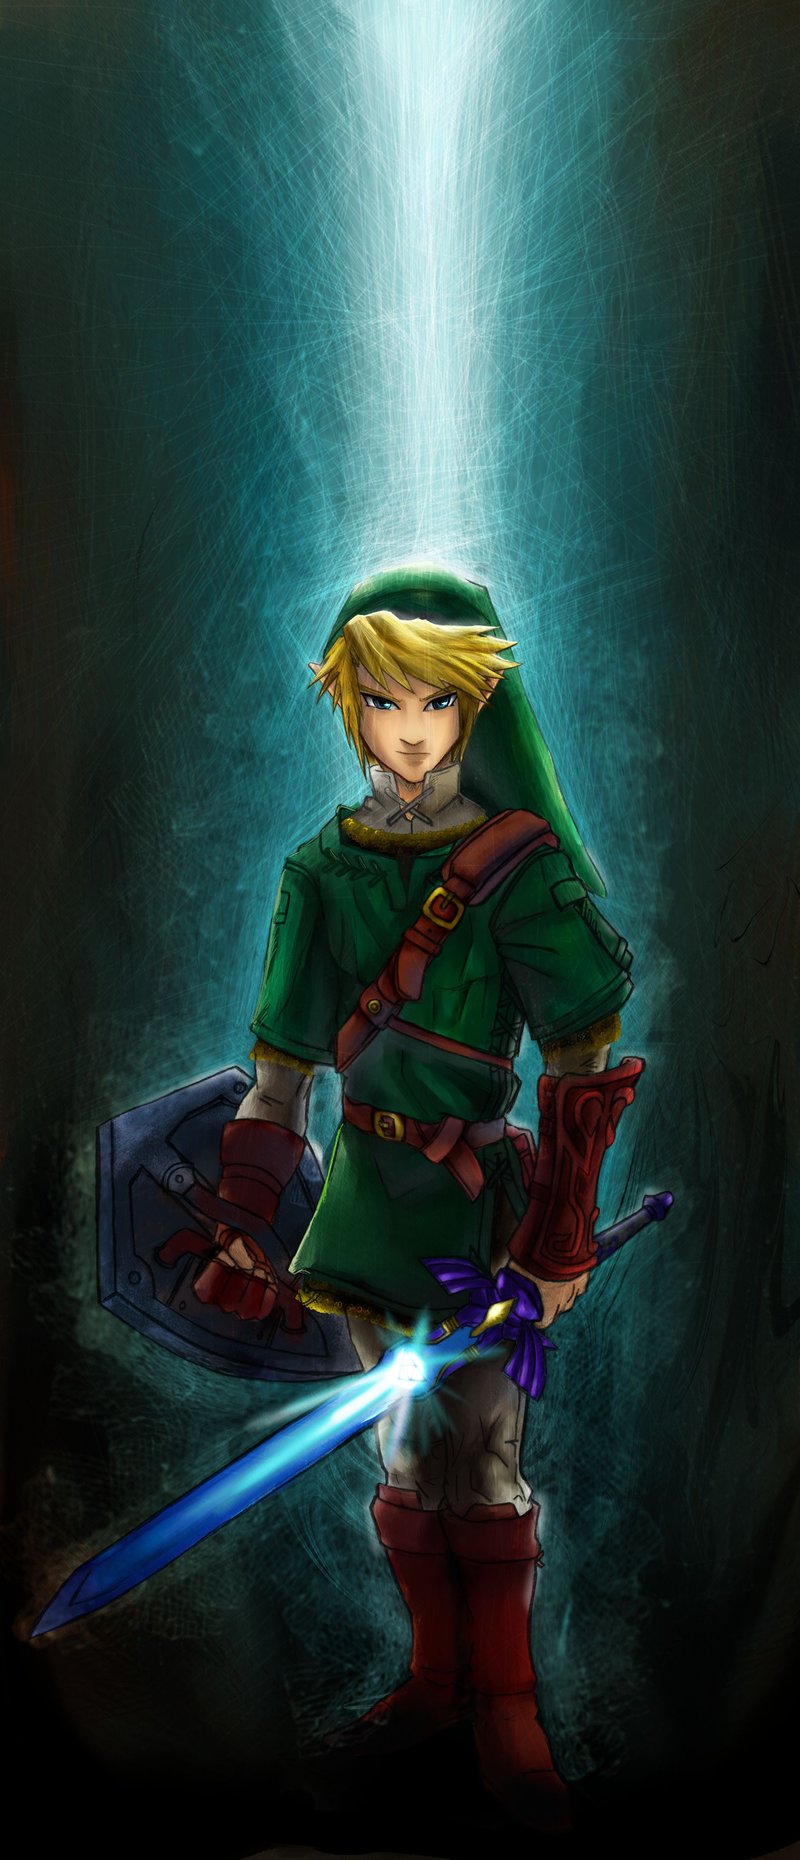 Legend of Zelda Art: Link - Gallery | eBaum's World